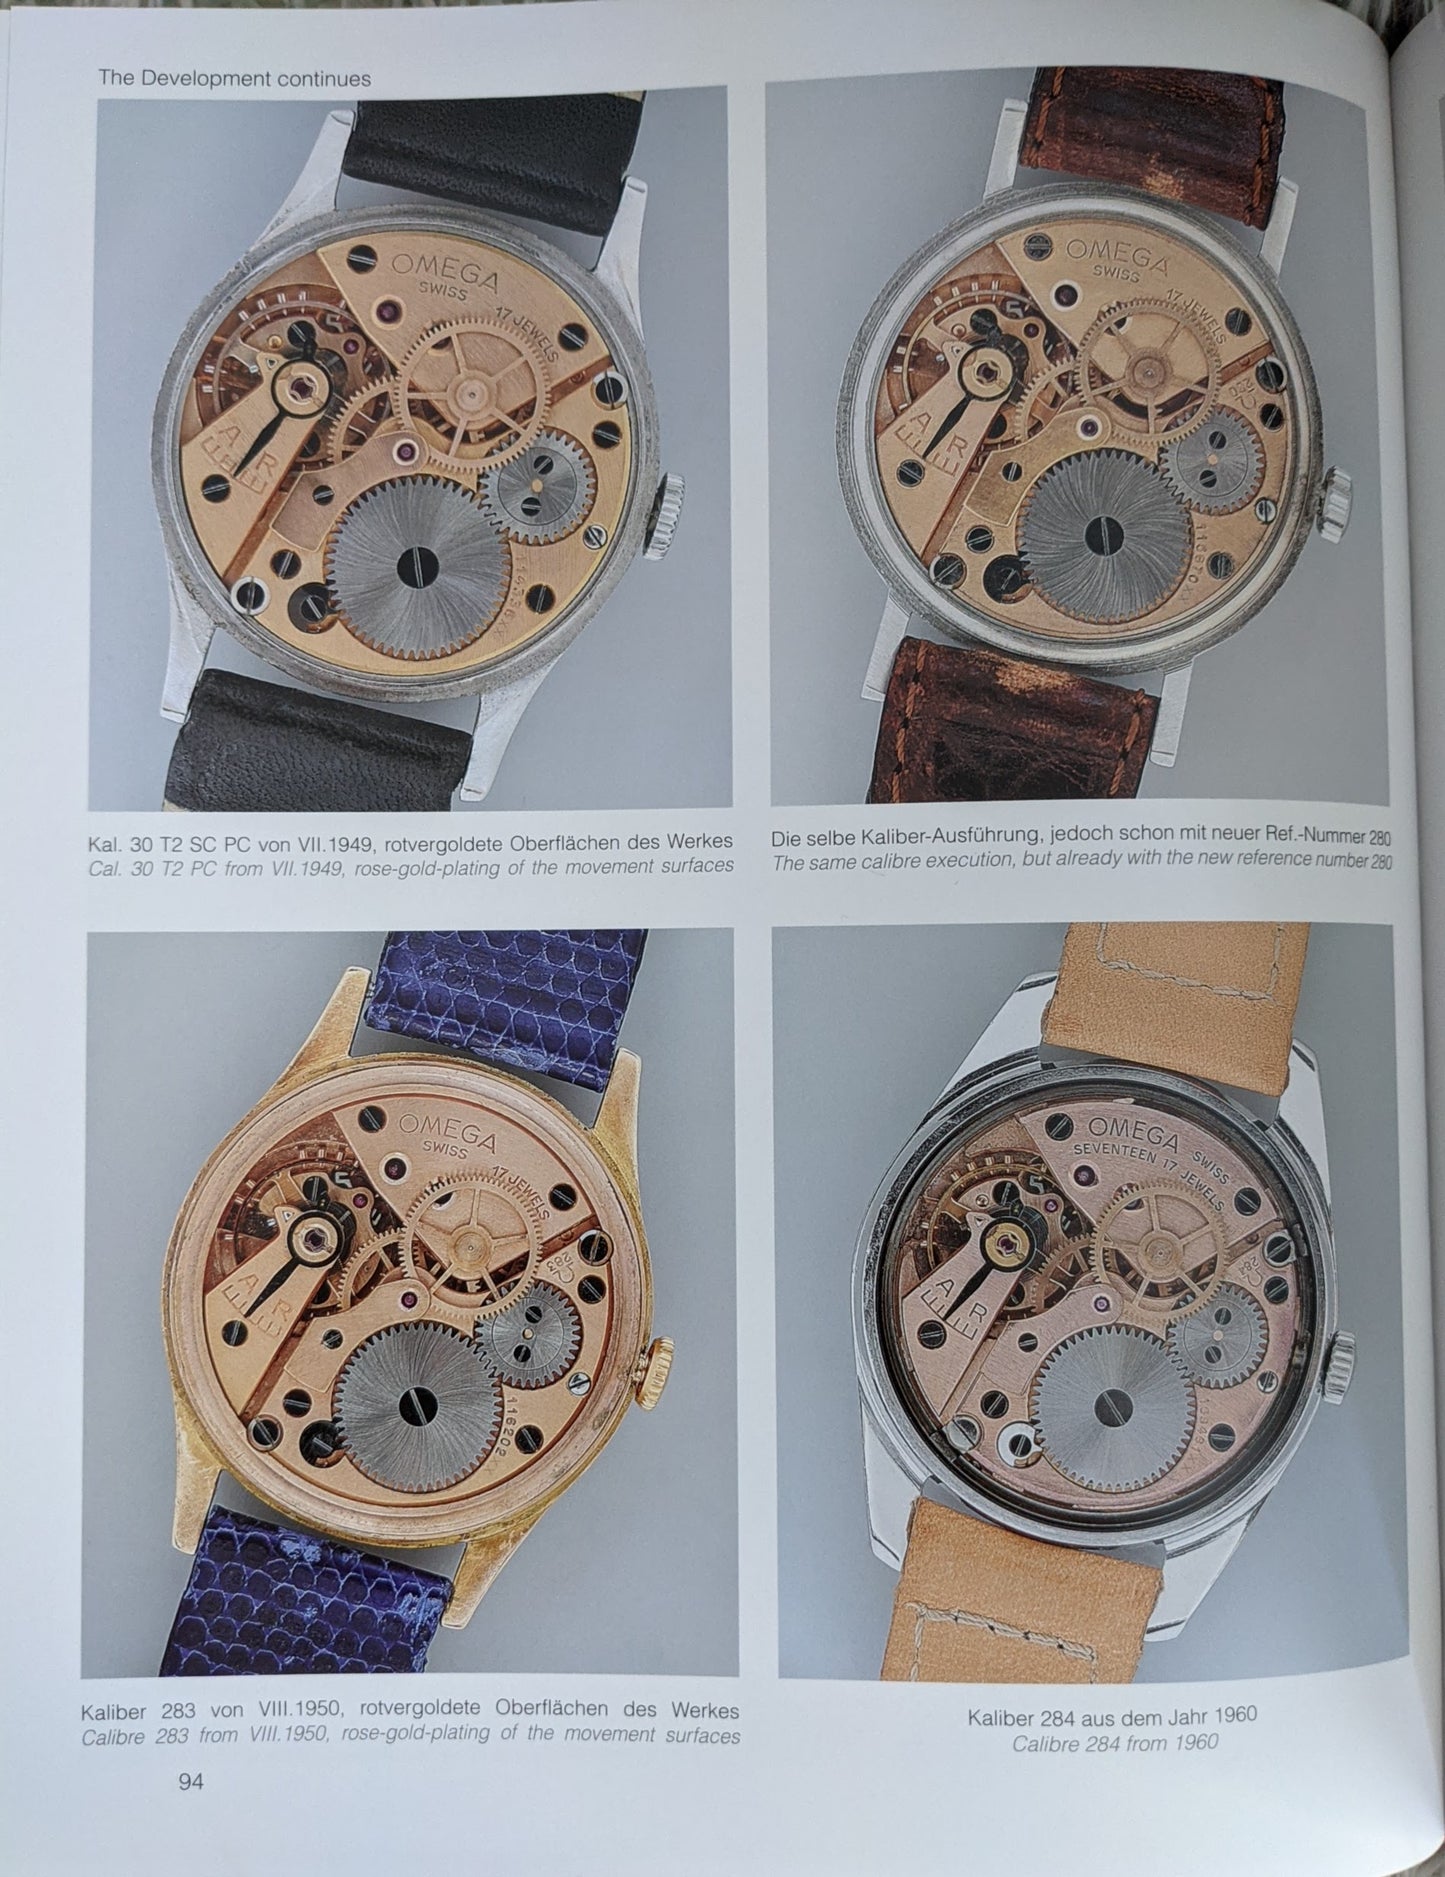 复古手表欧米茄粉红色“鲑鱼”表盘/校准。 283 (30T2) / 1952 年